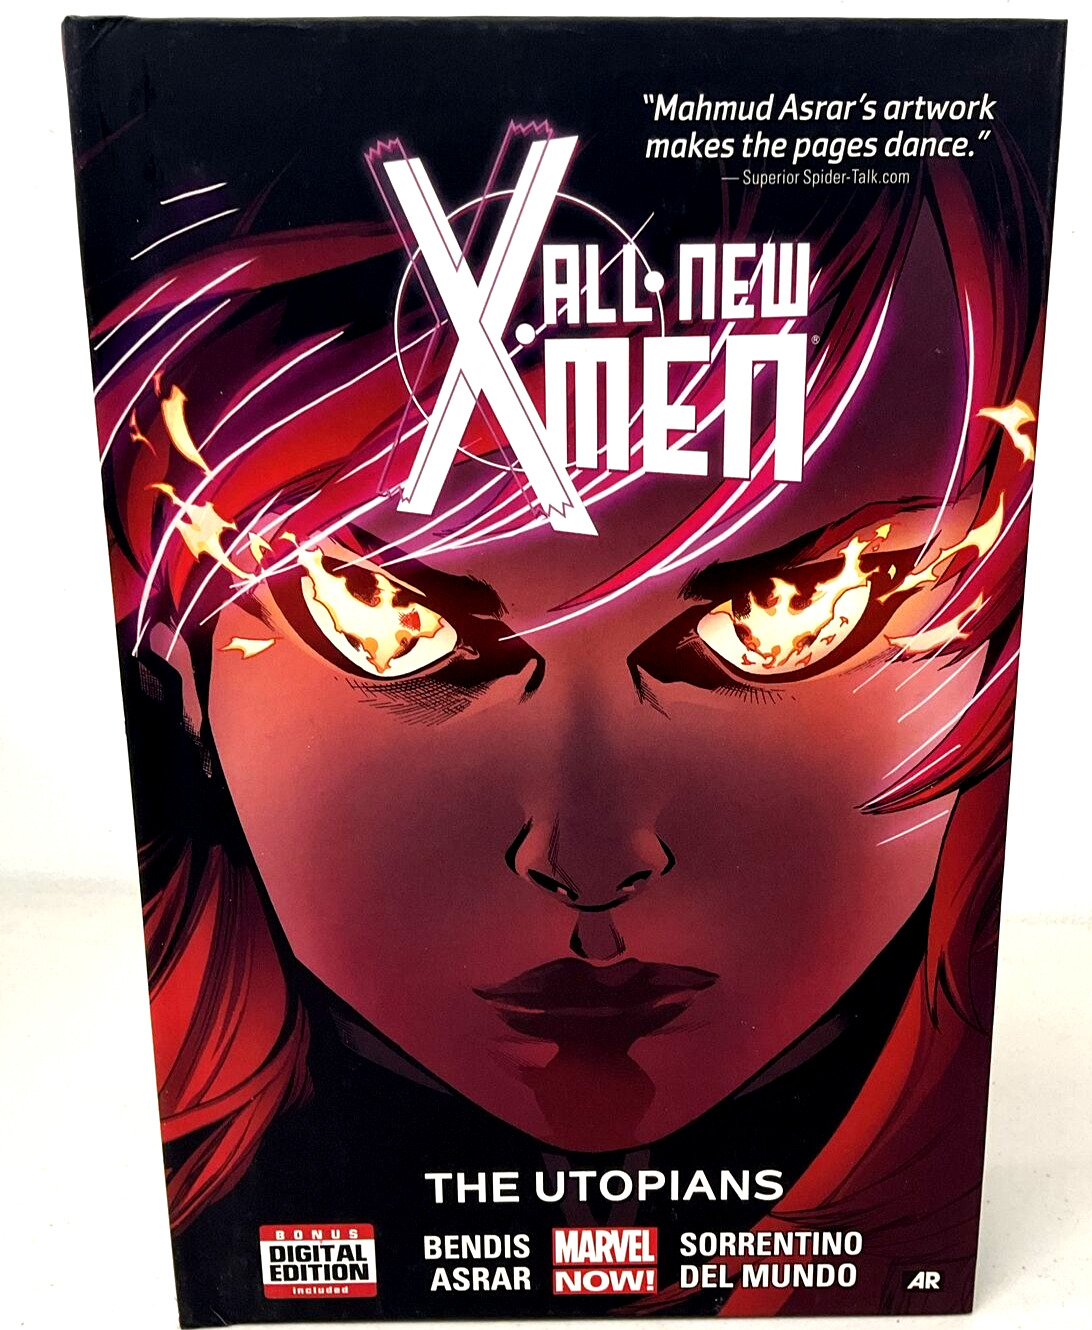 All-New X-Men Vol. 7 : The Utopians Hardcover